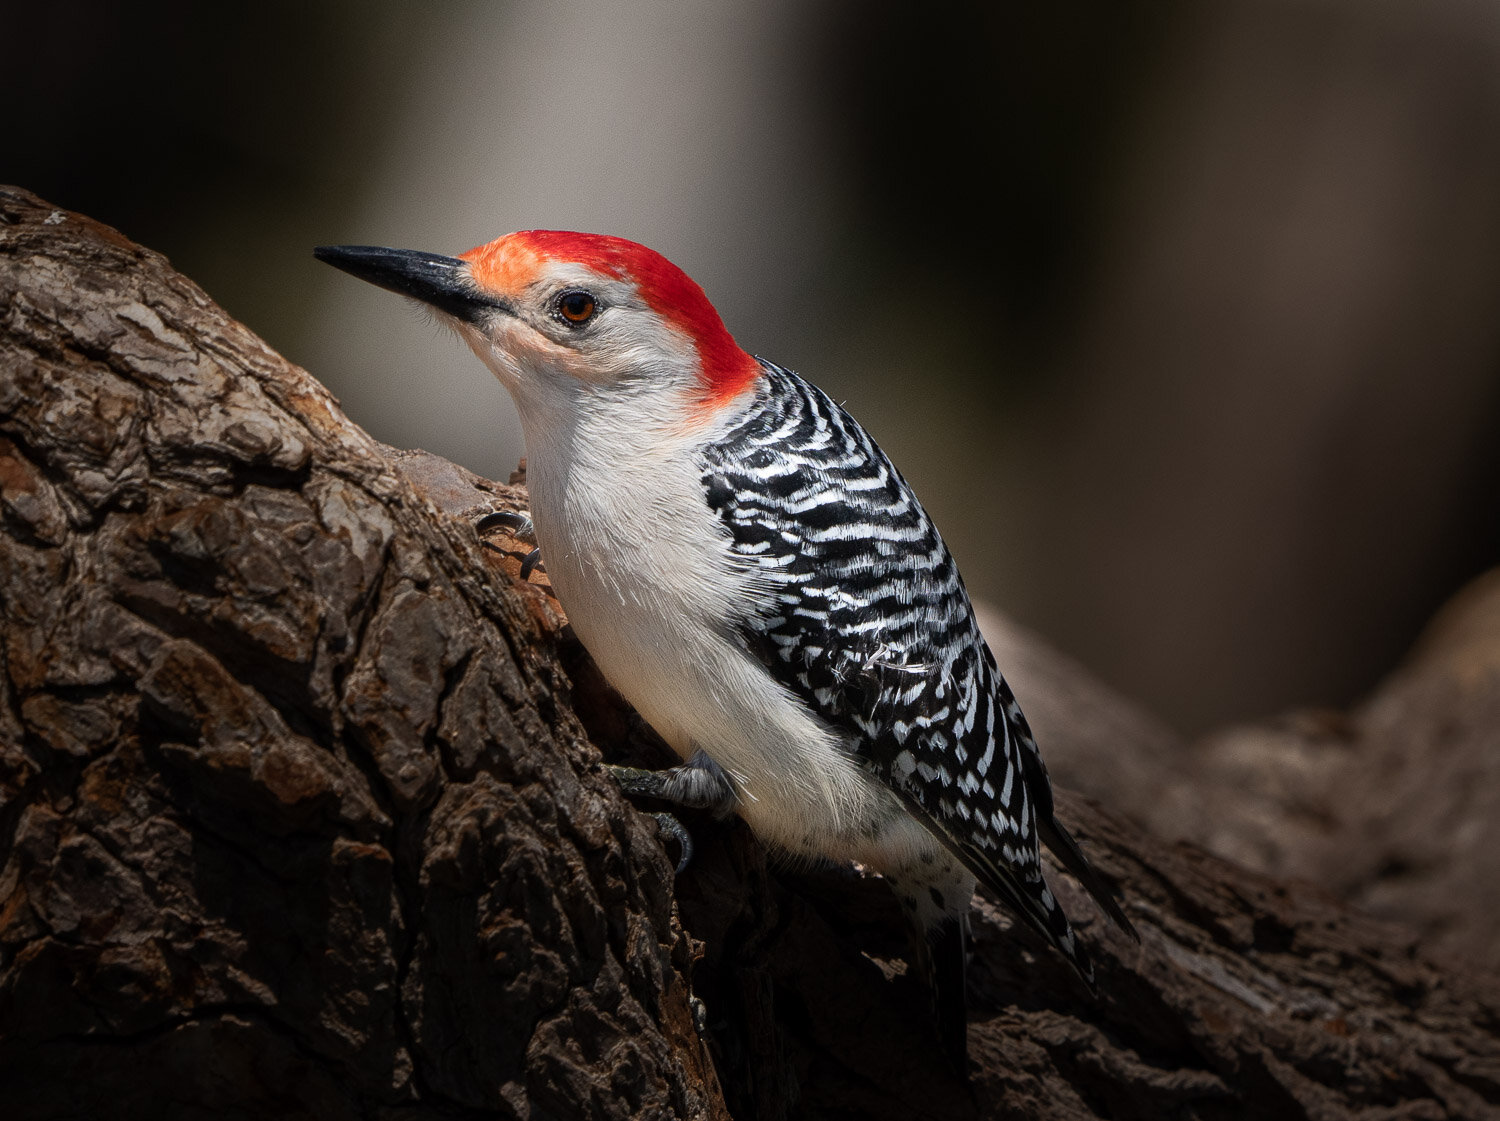 red-bellied-woodpecker-bird1.jpg